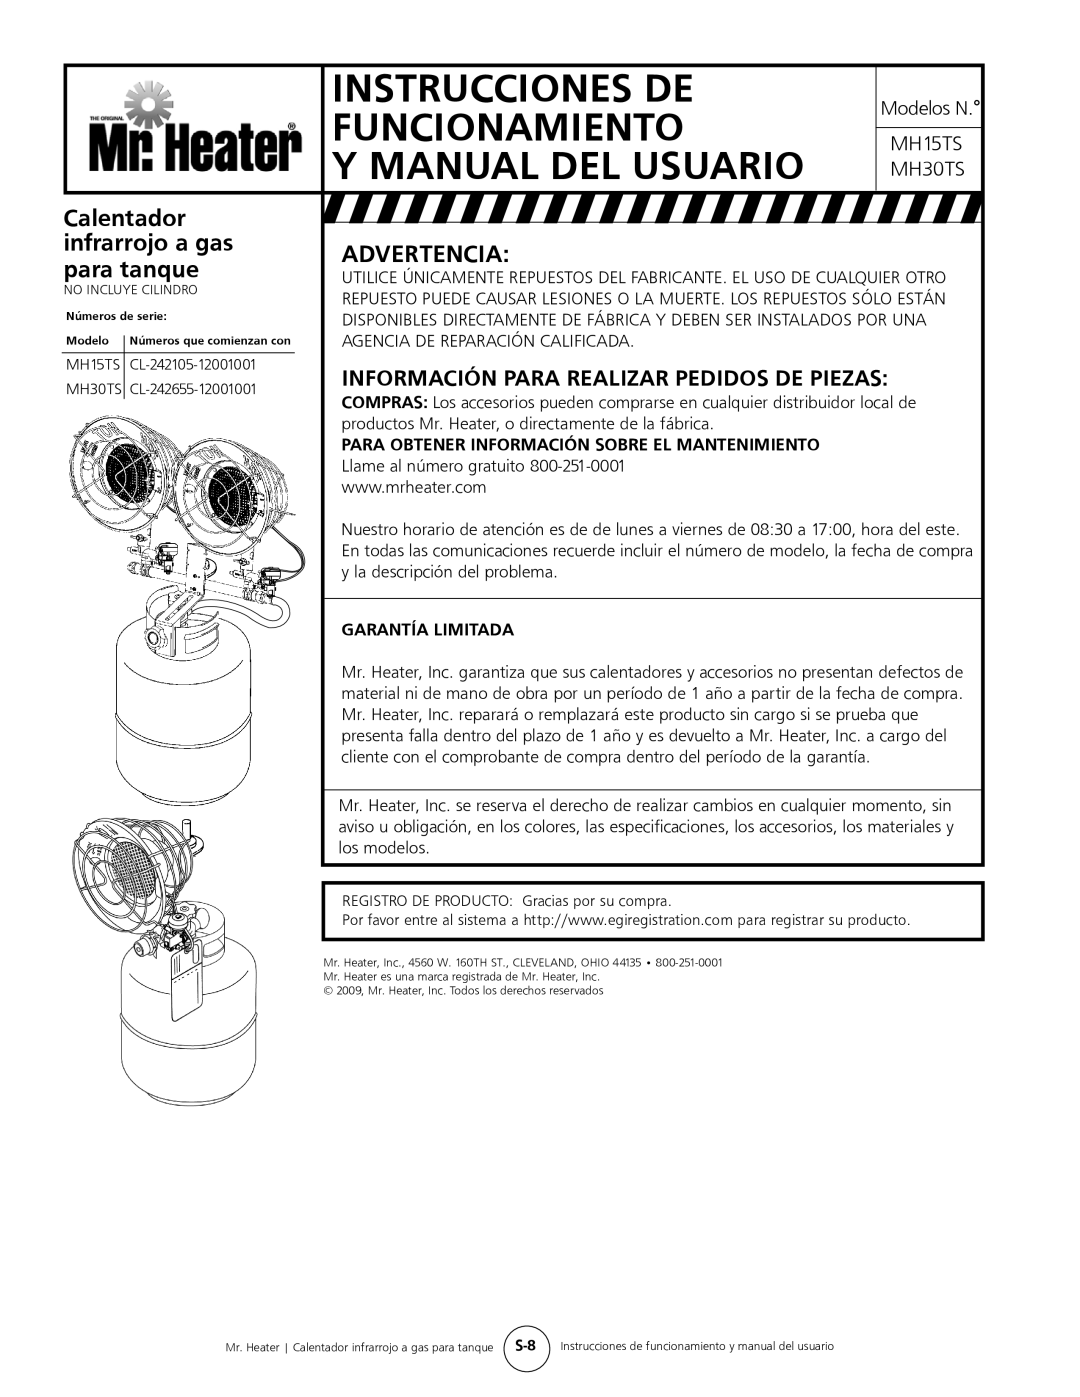 Mr. Heater MH15tS Instrucciones de, funcionamiento, Calentador, infrarrojo a gas, Advertencia, para tanque 